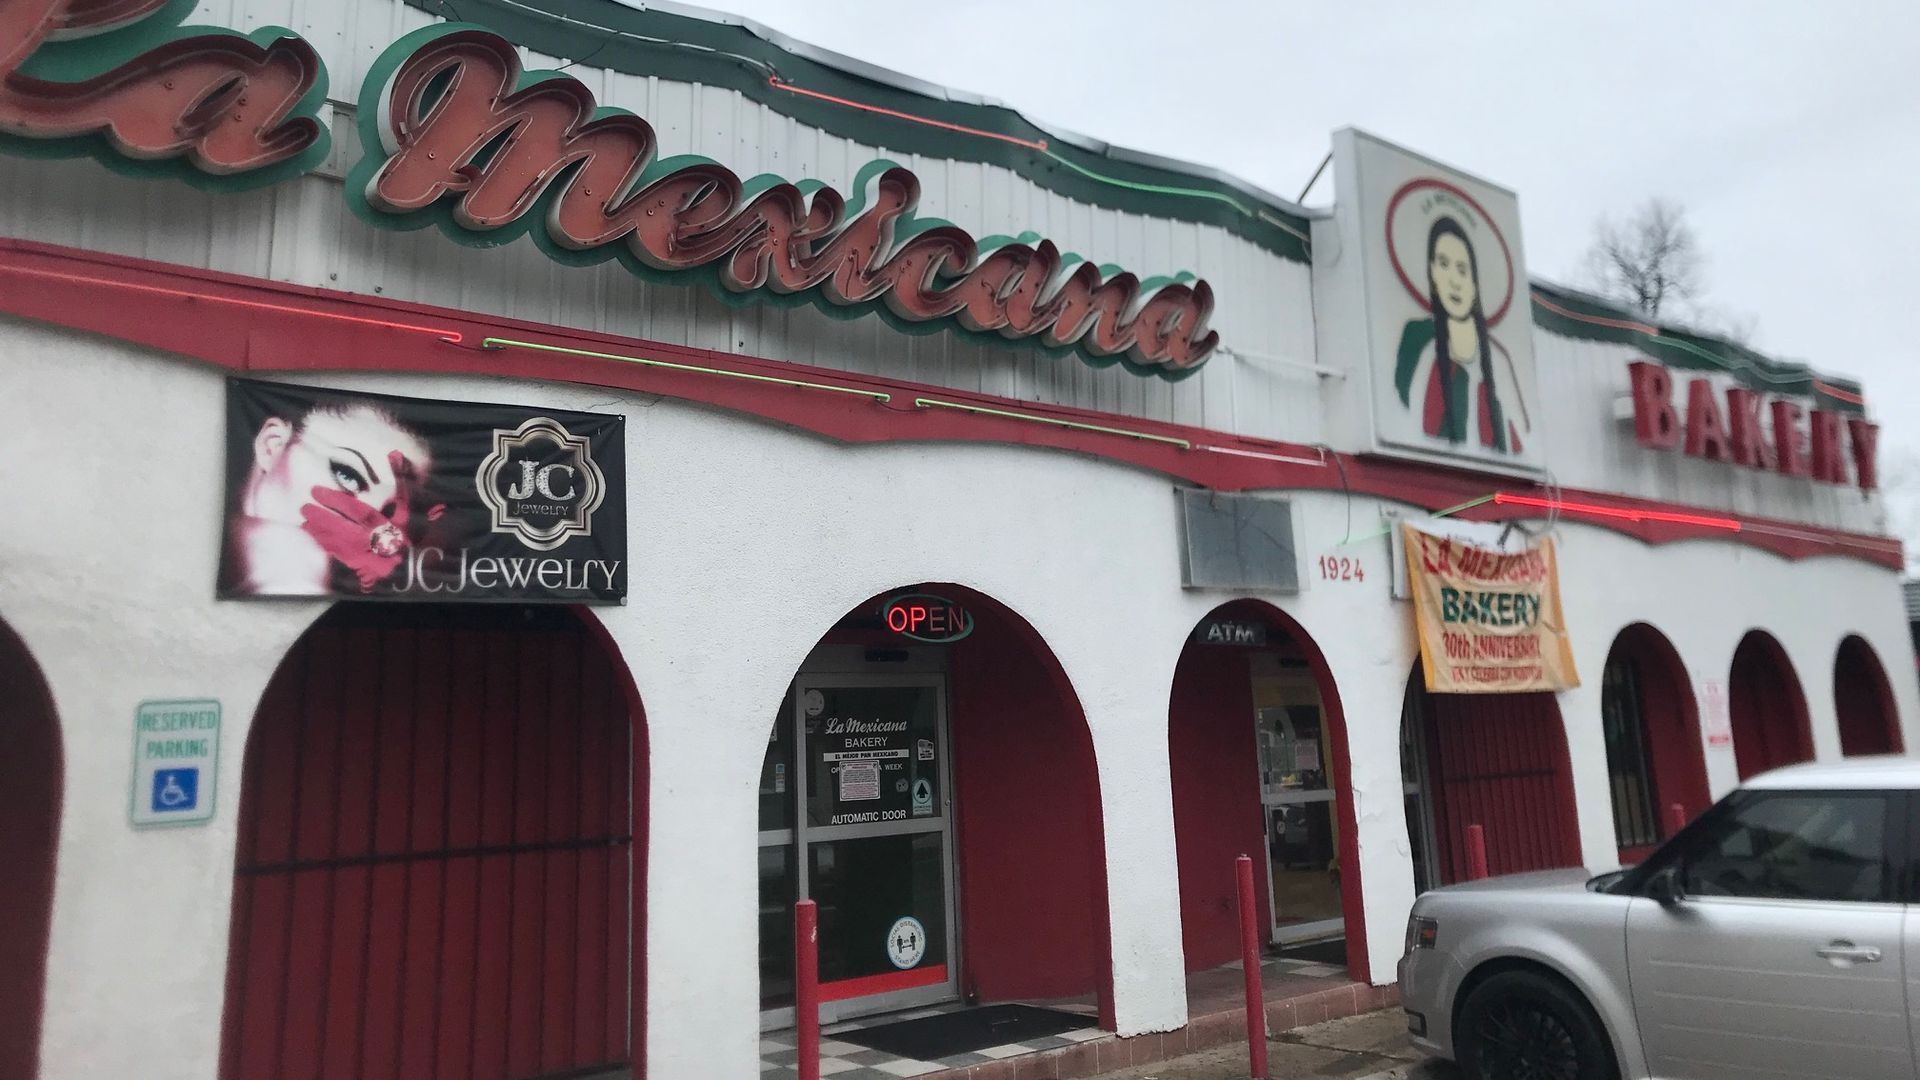 The outside of La Mexicana bakery